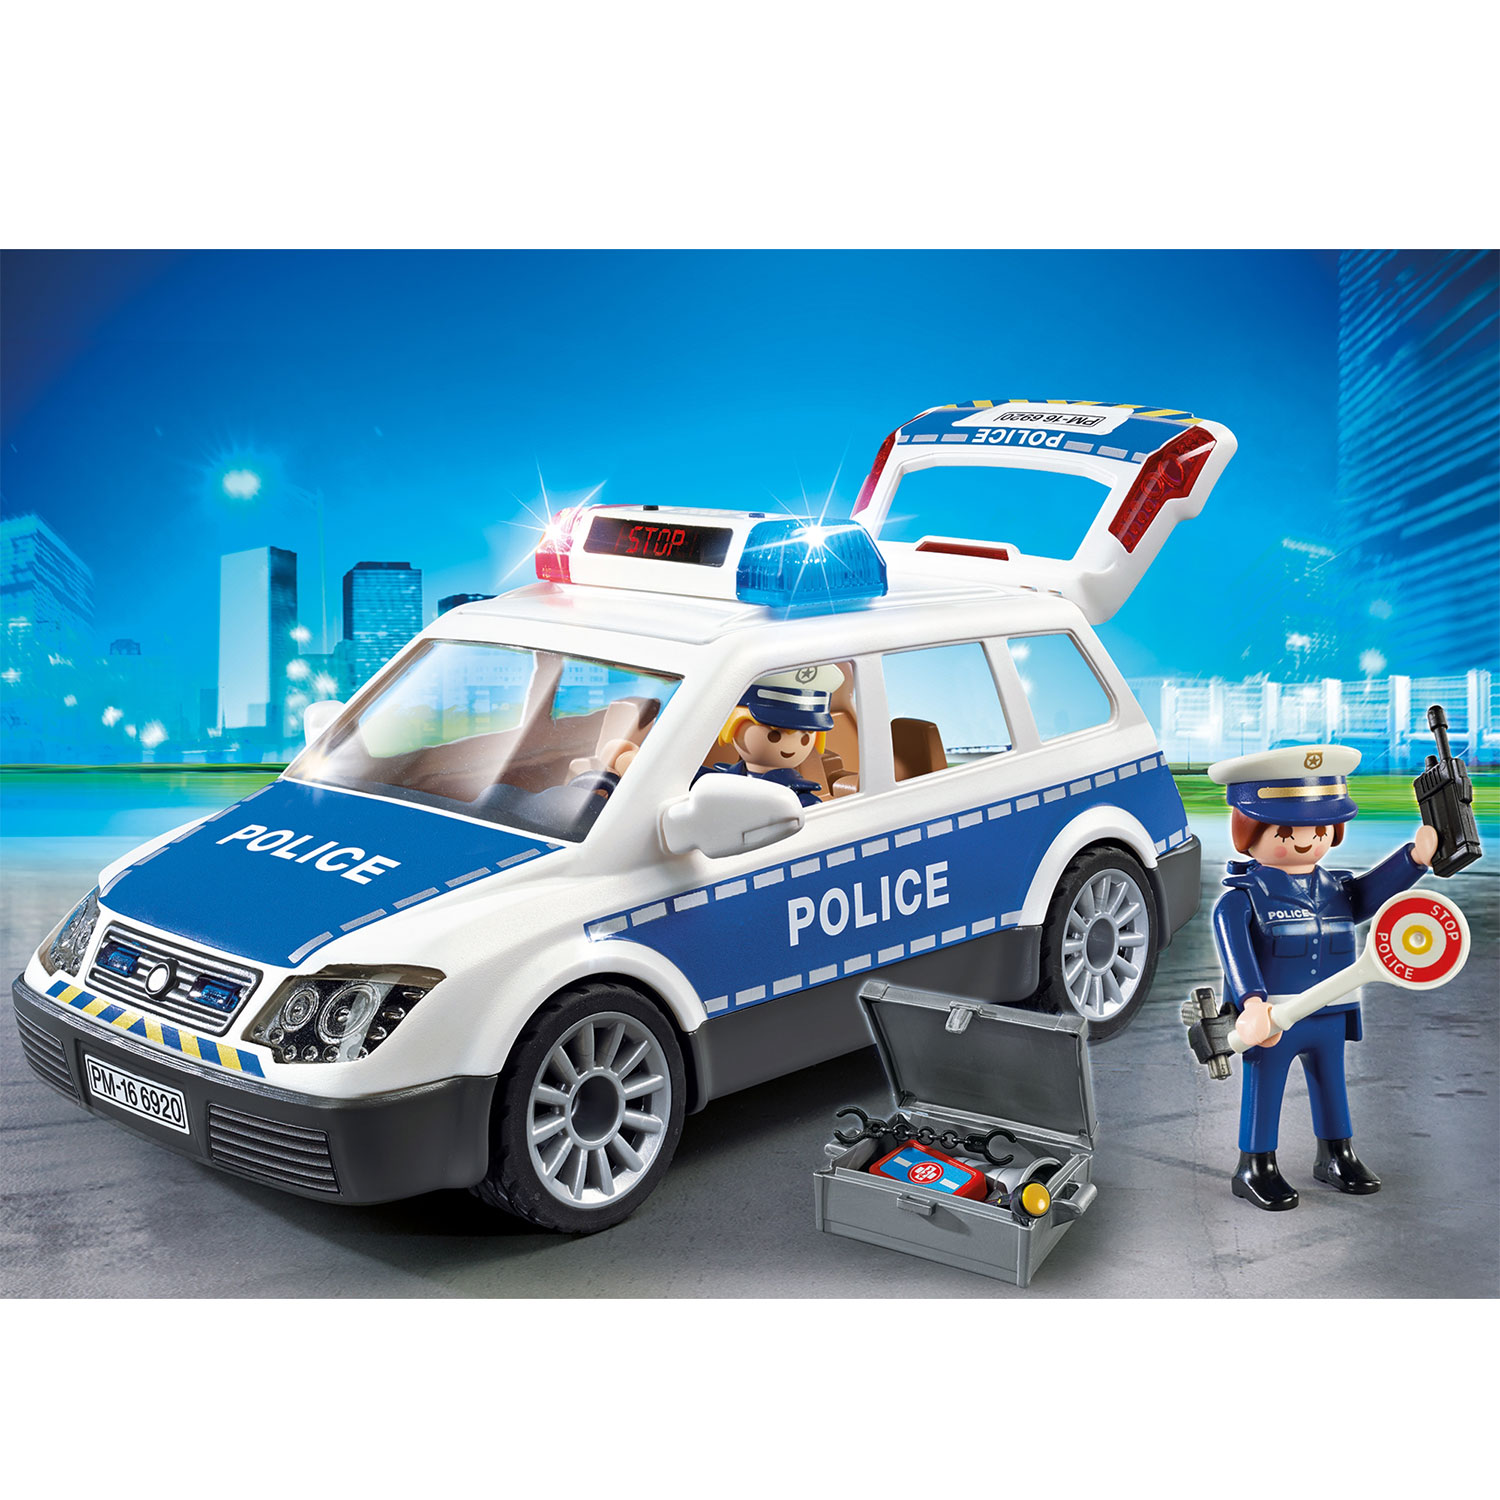 Onrechtvaardig Aan het leren scheepsbouw Playmobil City Action Police Patrol with Light and Sound - 6920 | Thimble  Toys